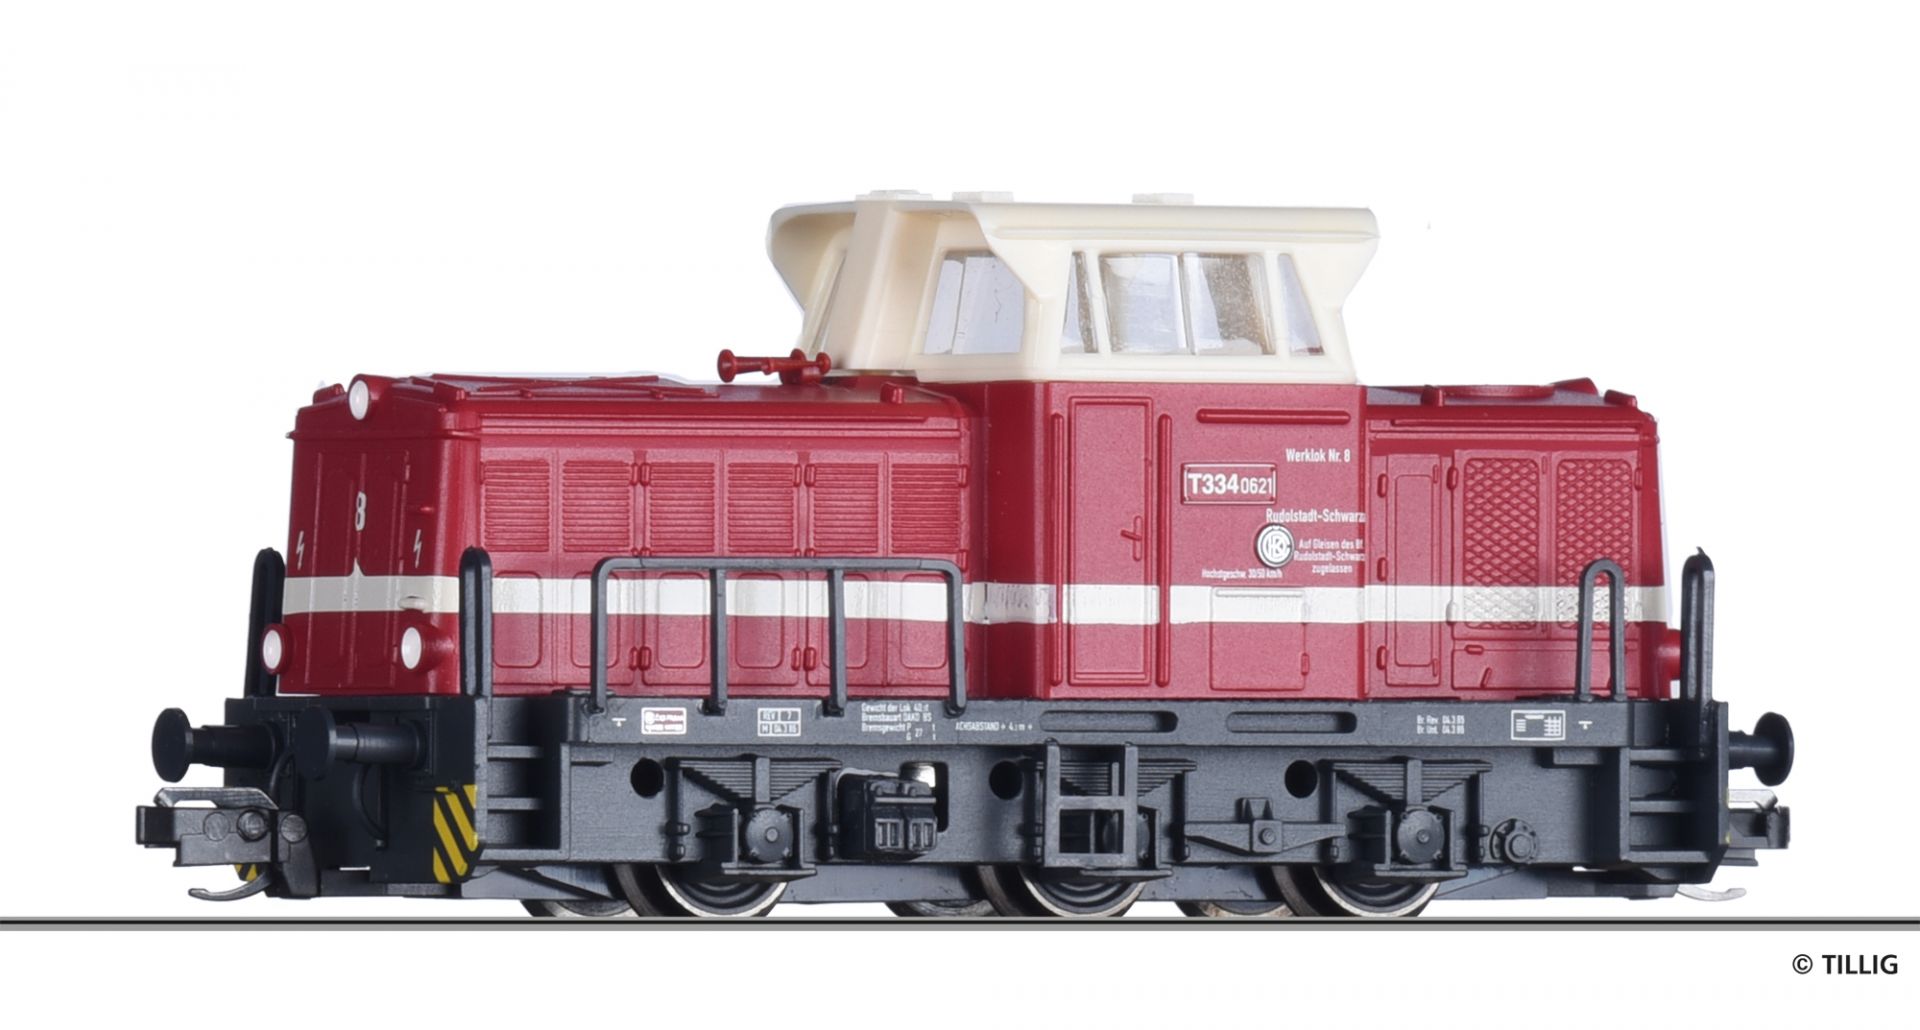 502119 | Diesellokomotive Werkbahn -werksseitig ausverkauft-